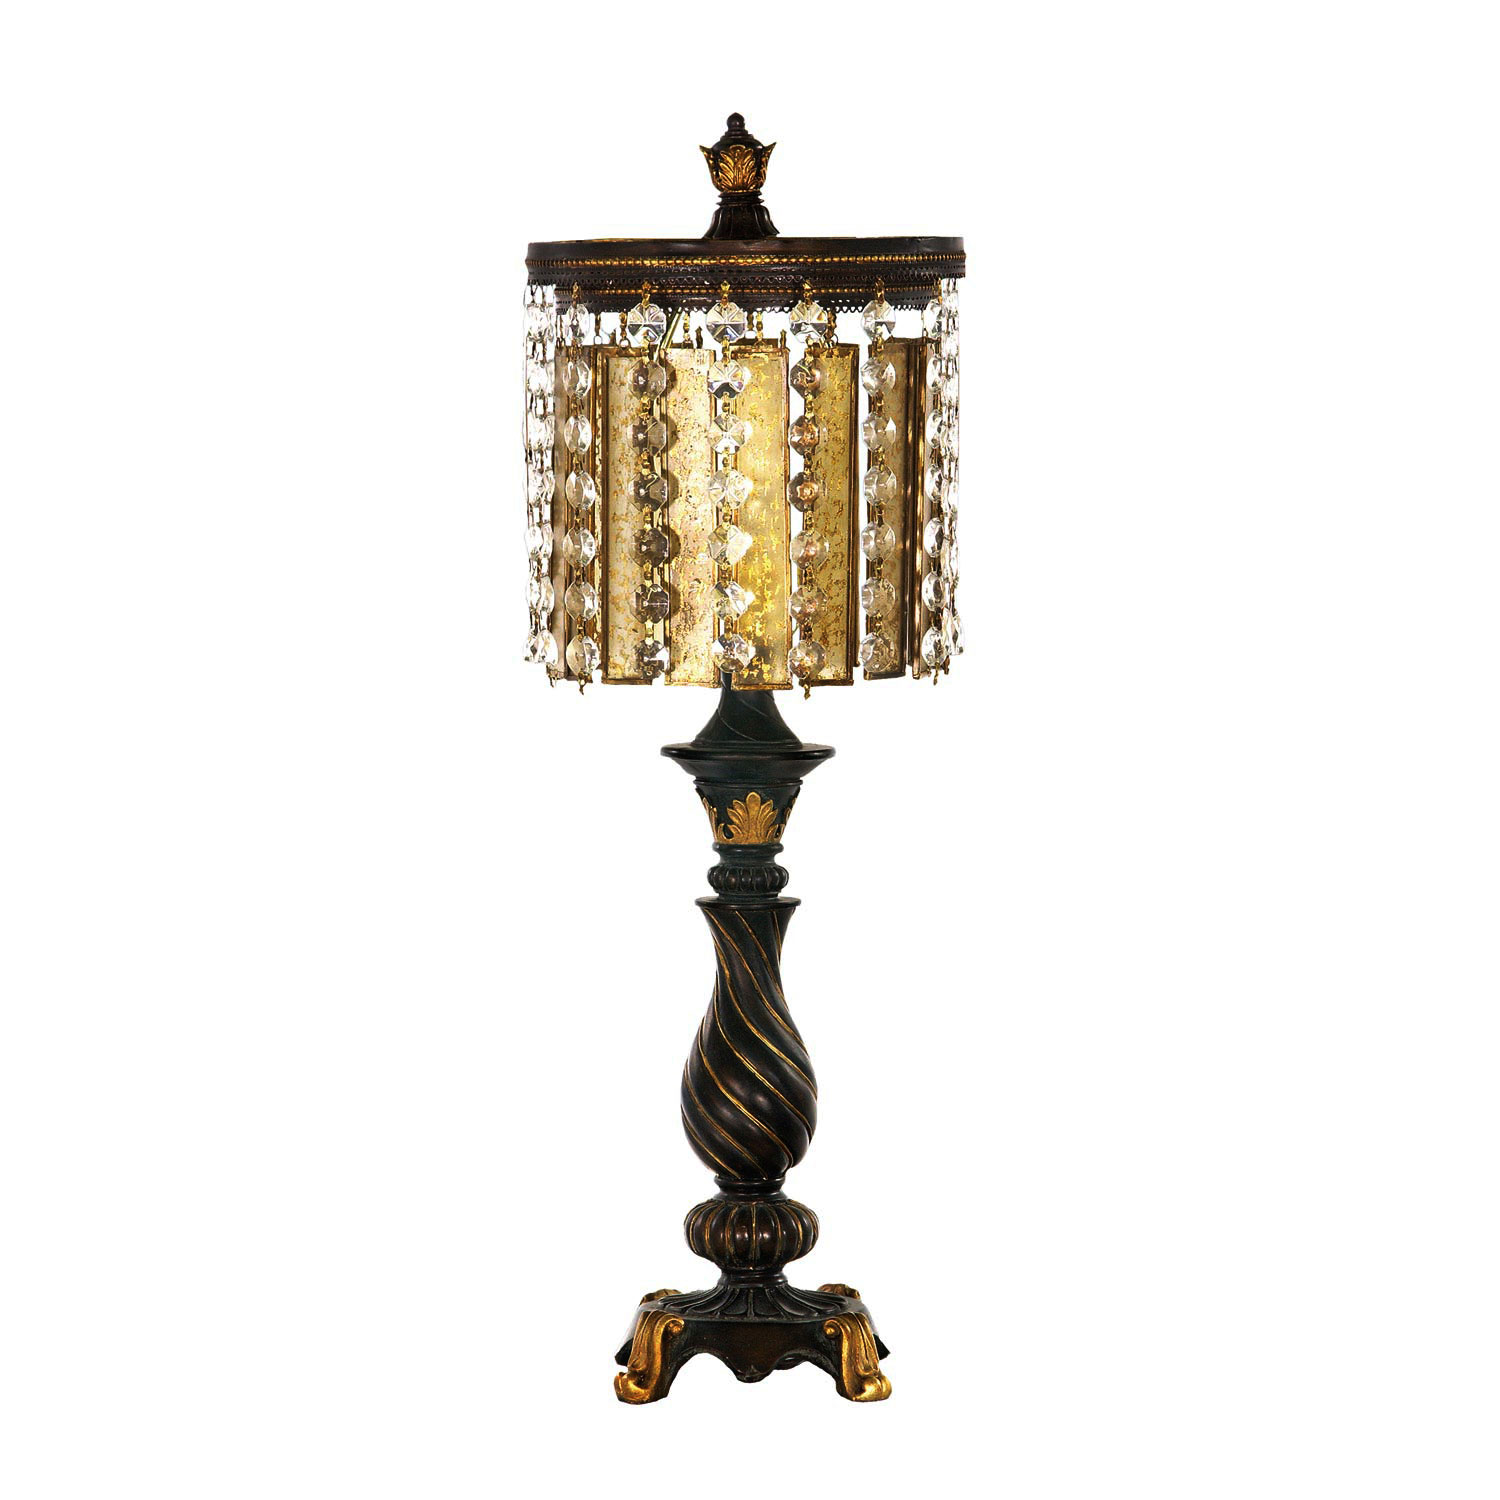 Elk Lighting 93-090 Amber and Crystal Table Lamp - Gold Leaf / Black